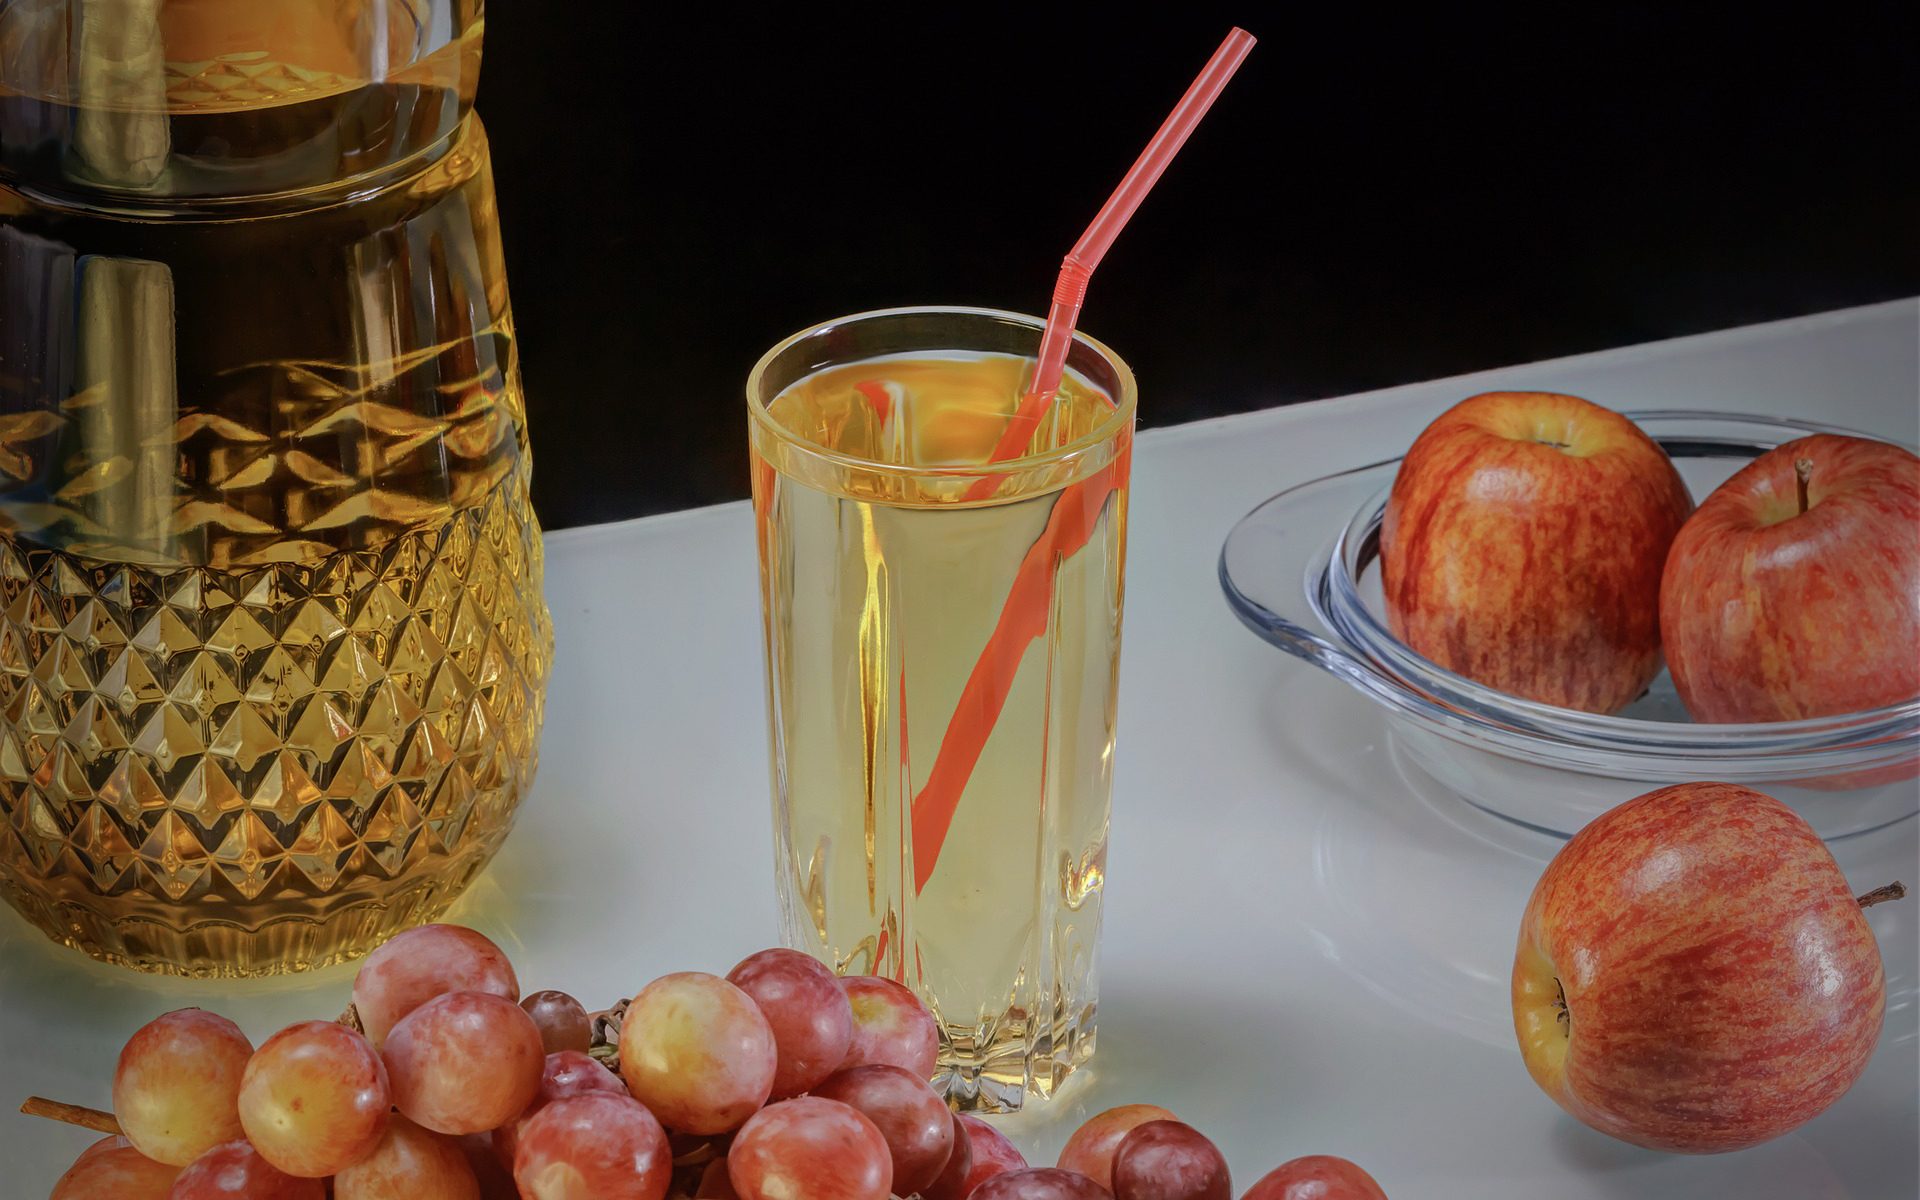 Benefits of Apple Cider Vinegar